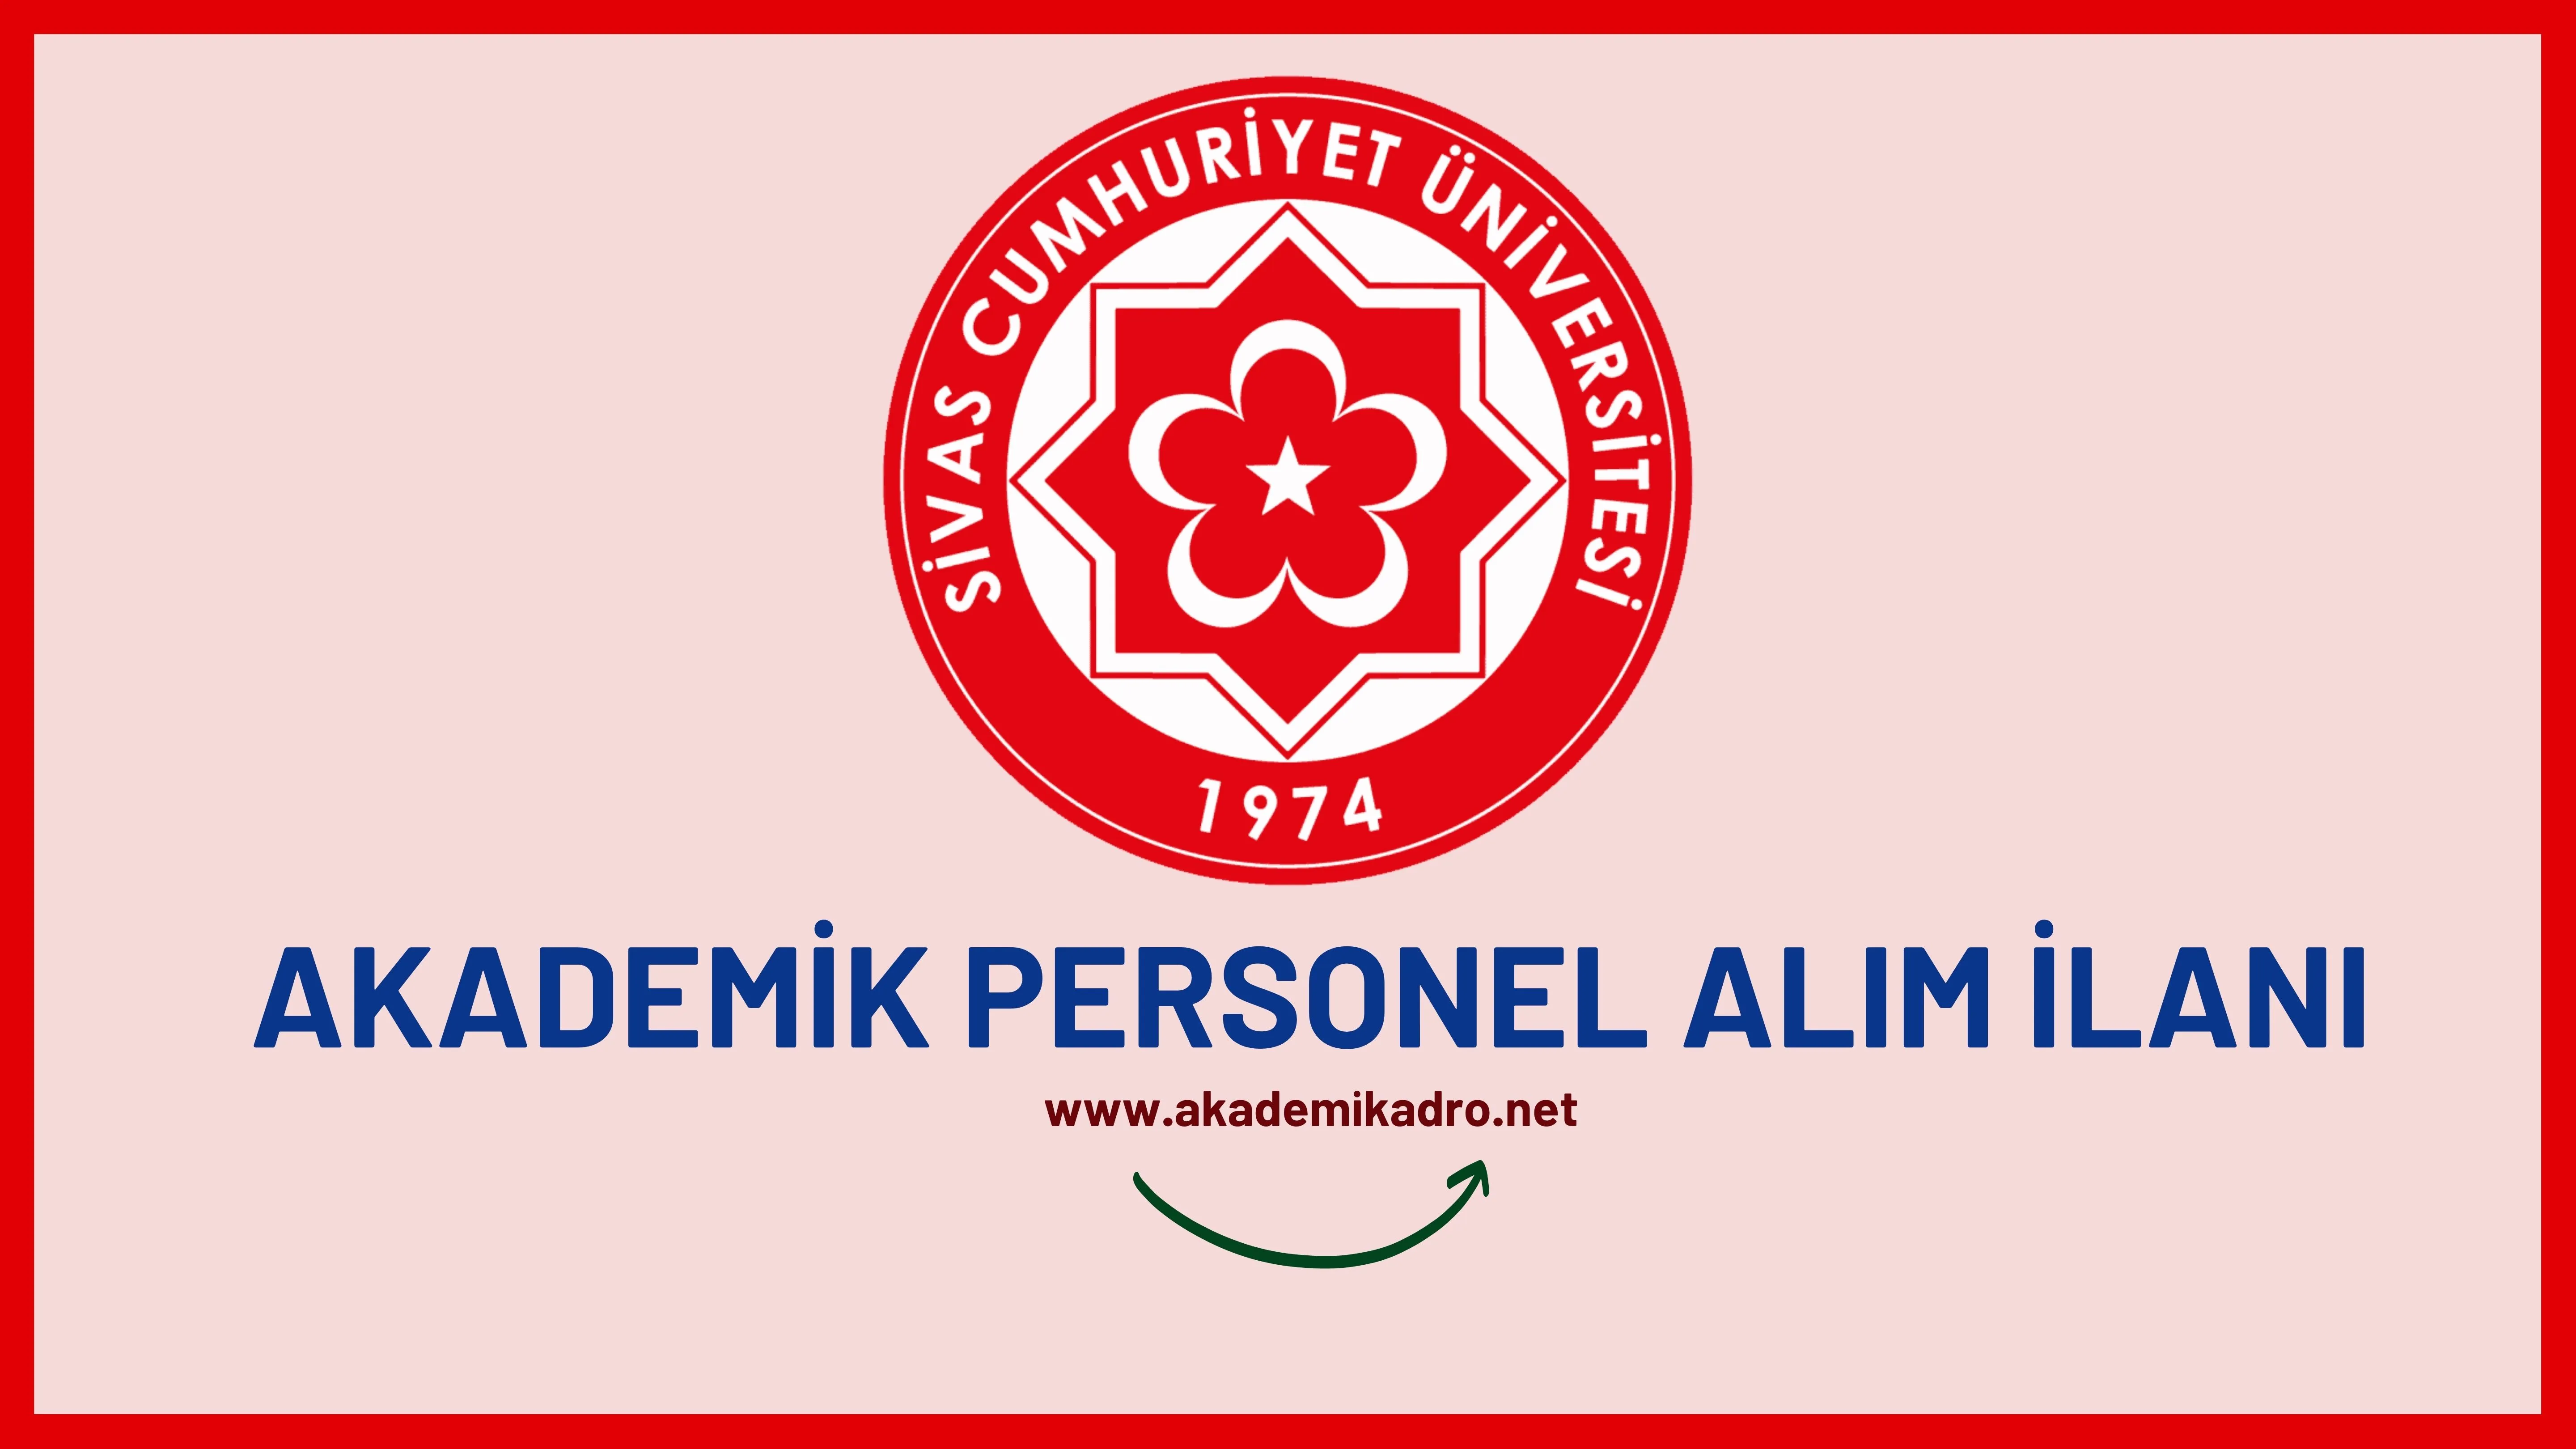 Sivas Cumhuriyet Üniversitesi birçok alandan 75 akademik personel alacak. Son başvuru tarihi 16 Eylül 2022.